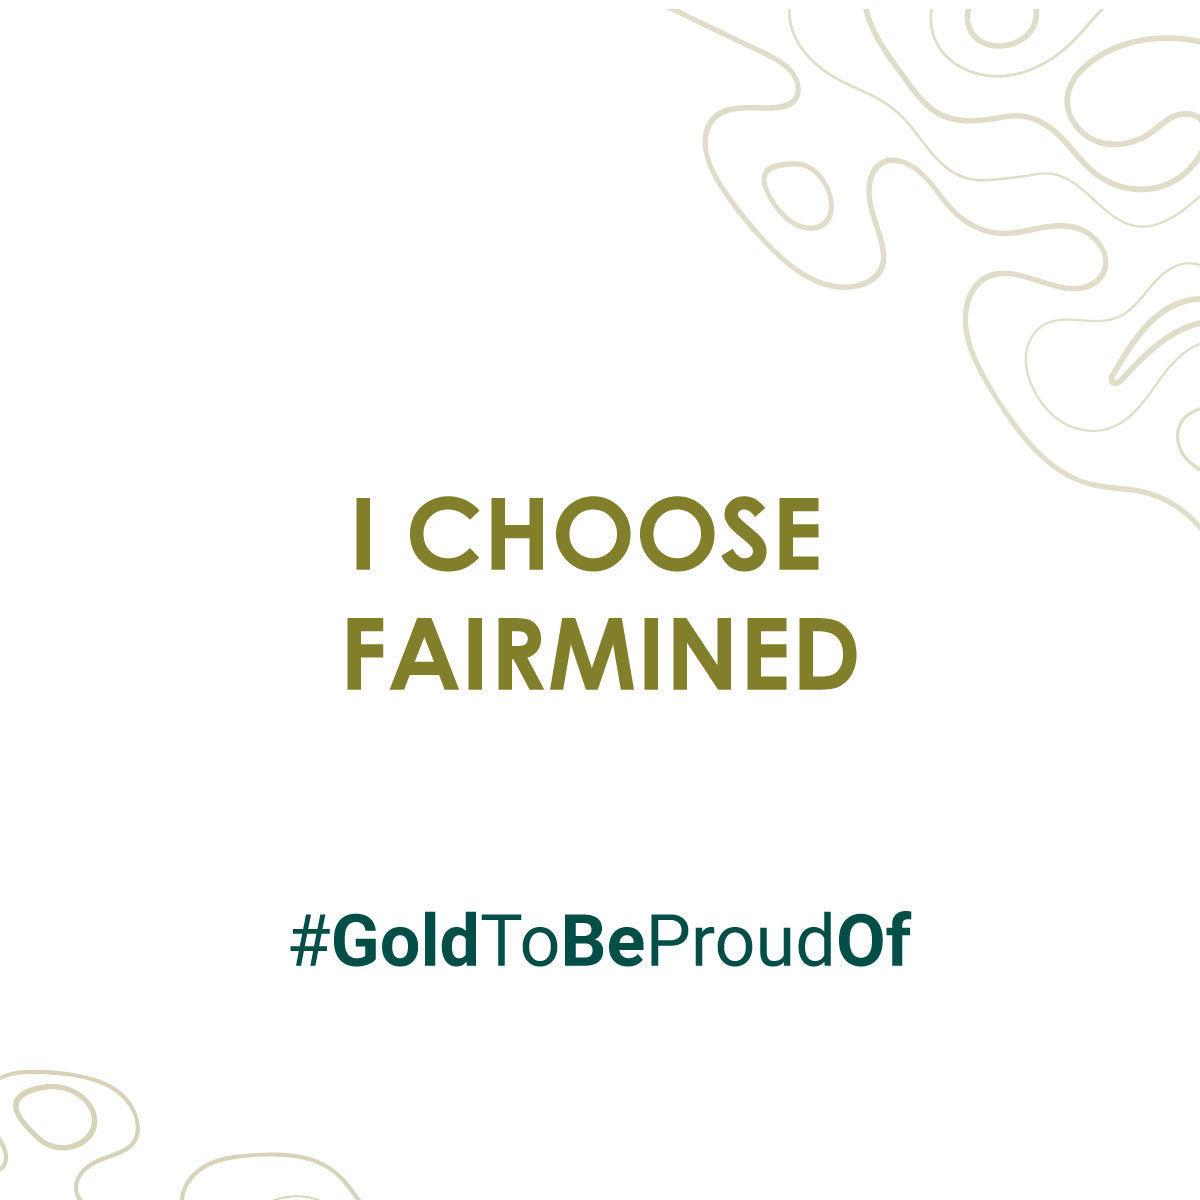 I choose Fairmined. #goldtobeproudof